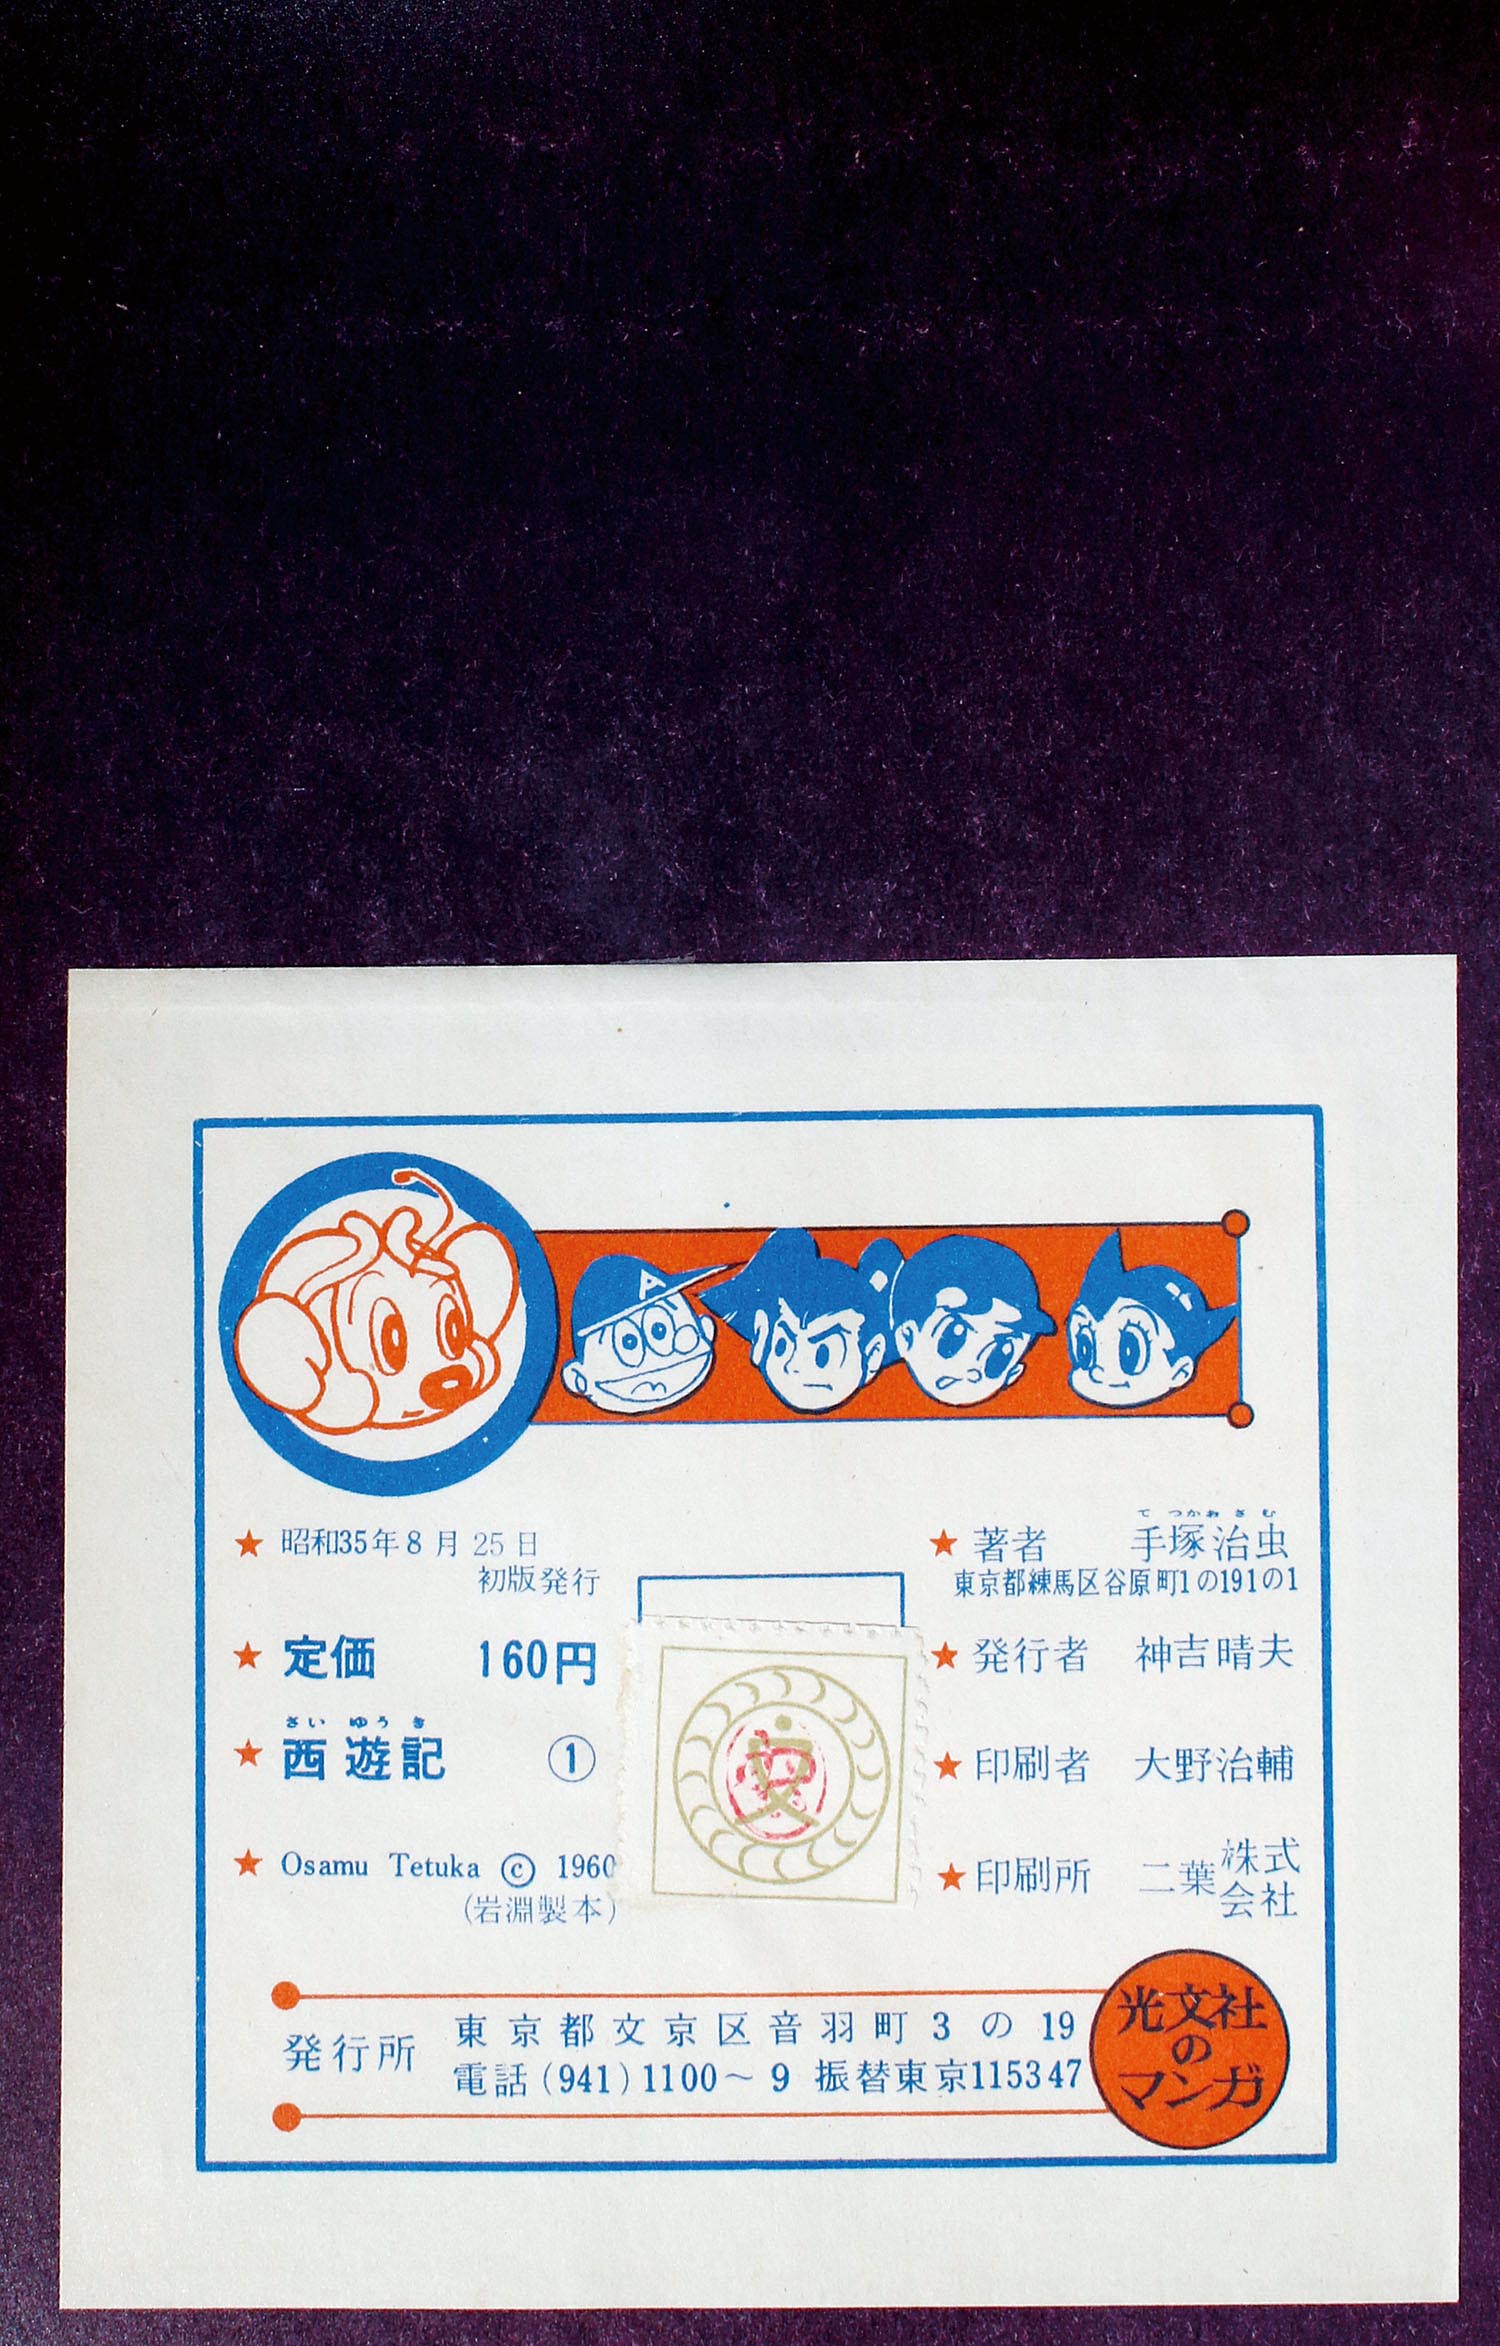 カバー 手塚治虫 光文社 西遊記 全3巻 昭和35年 カバー - www